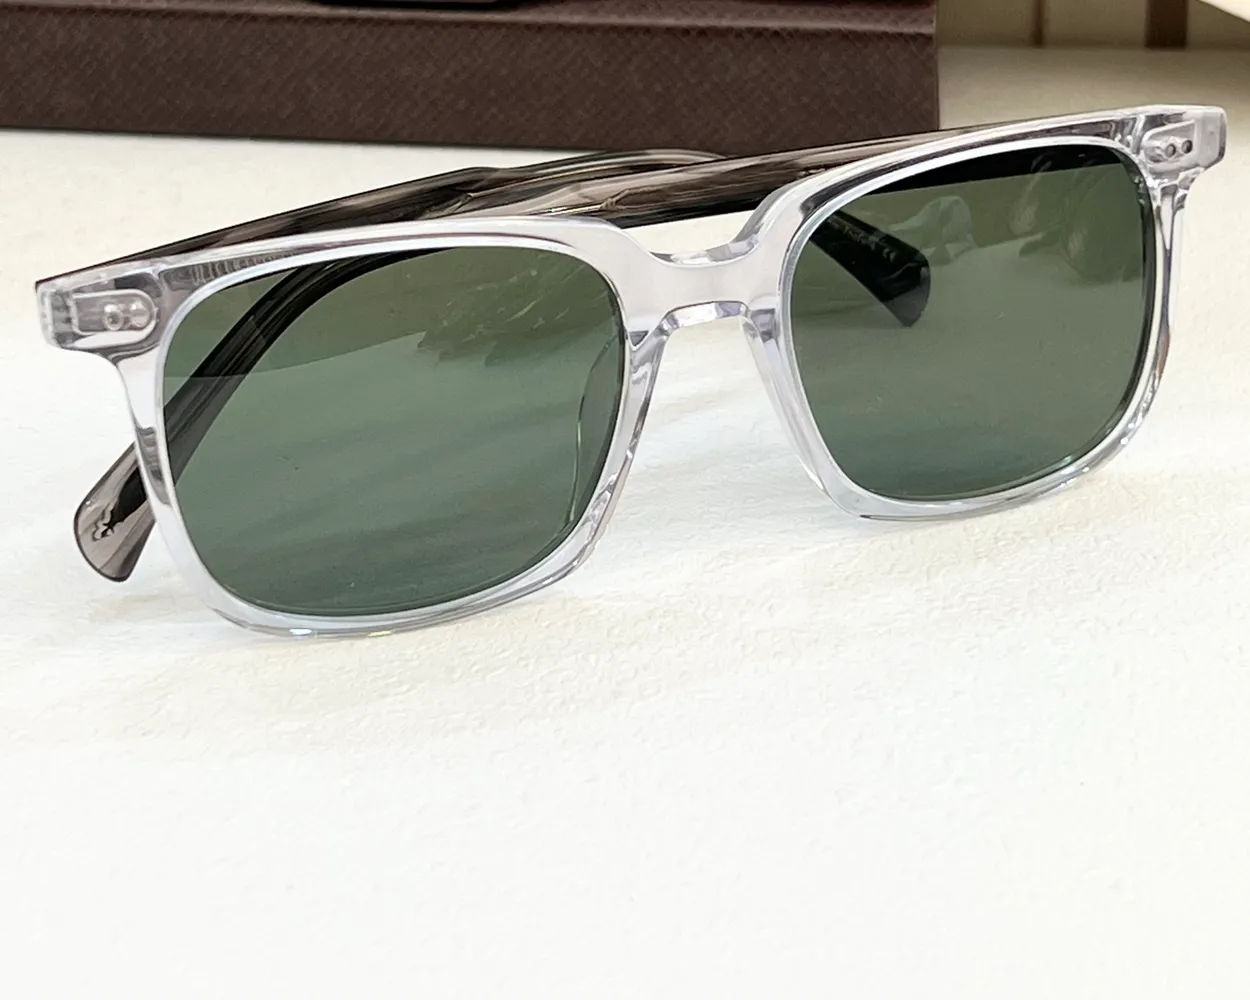 Kwadratowe okulary przeciwsłoneczne kryształowe zielone soczewki mężczyźni letnie słoneczki gafas de sol projektant okularów przeciwsłonecznych Occhialia da sole uv400 ochron